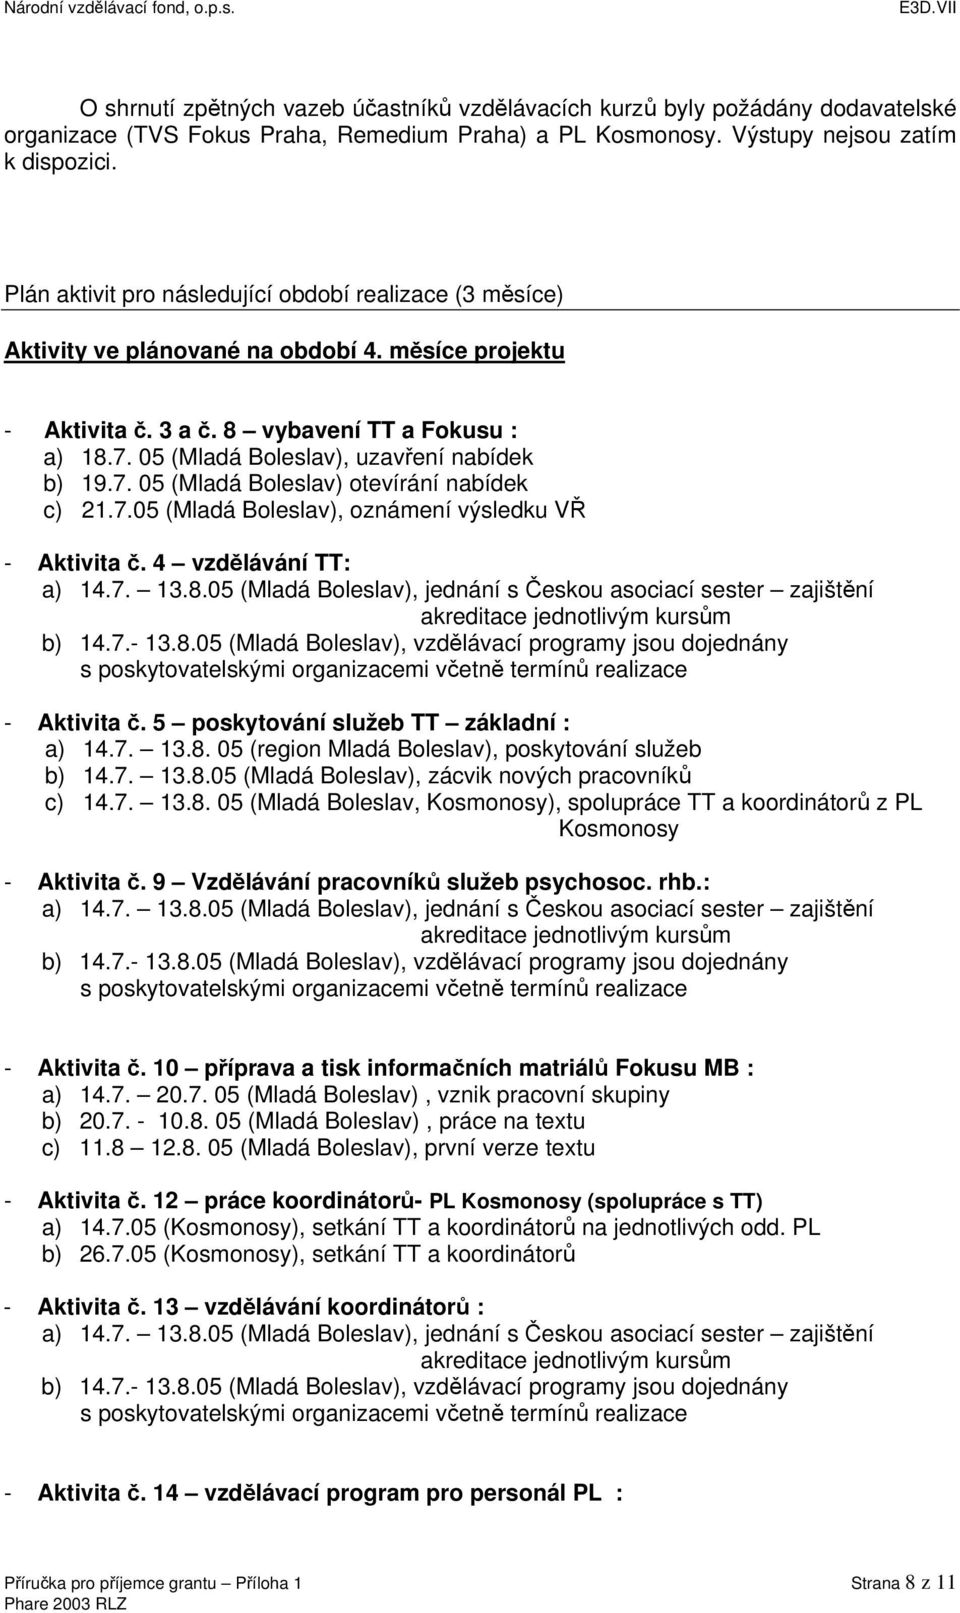 05 (Mladá Boleslav), uzavření nabídek b) 19.7. 05 (Mladá Boleslav) otevírání nabídek c) 21.7.05 (Mladá Boleslav), oznámení výsledku VŘ - Aktivita č. 4 vzdělávání TT: a) 14.7. 13.8.